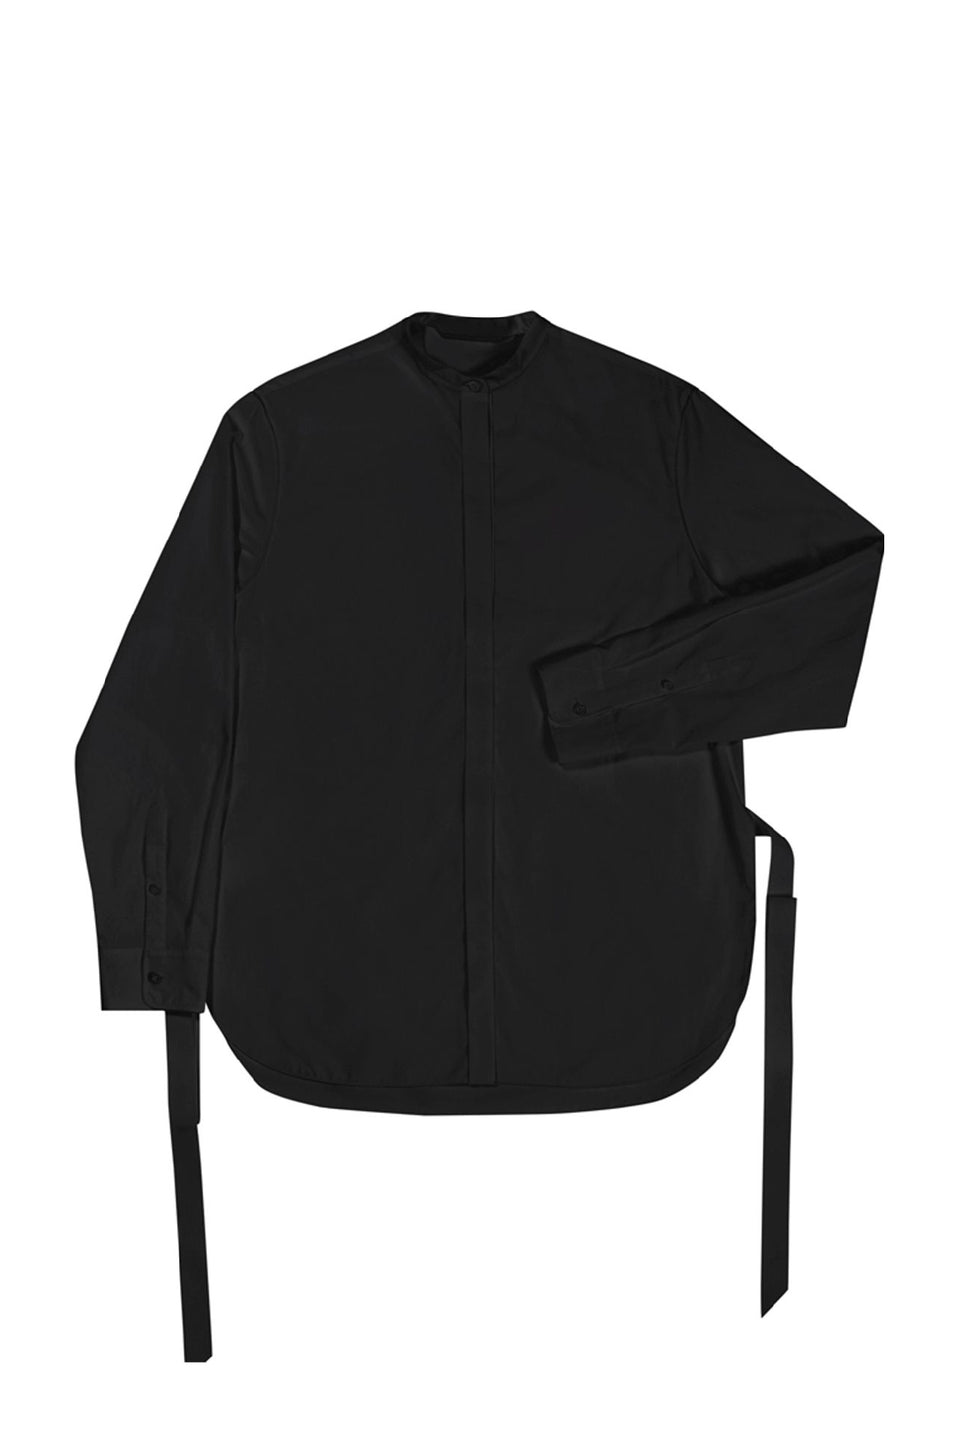 The Essential Shirt - Black (listing page thumbnail)